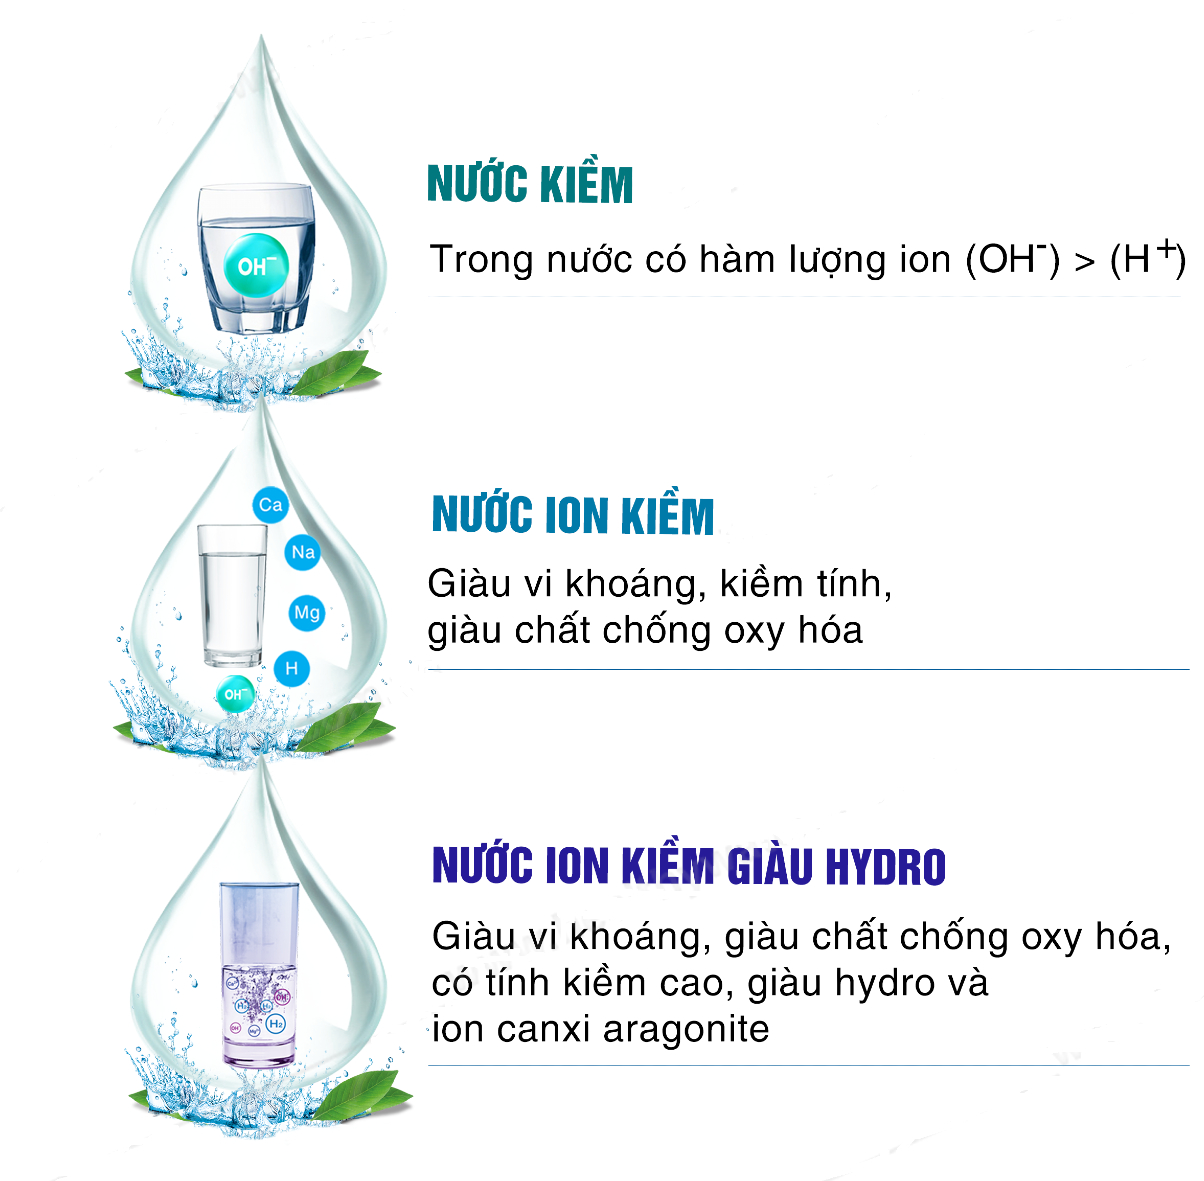 Nước kiềm, nước ion kiềm, nước ion kiềm giàu Hydrogen – Có gì khác biệt?